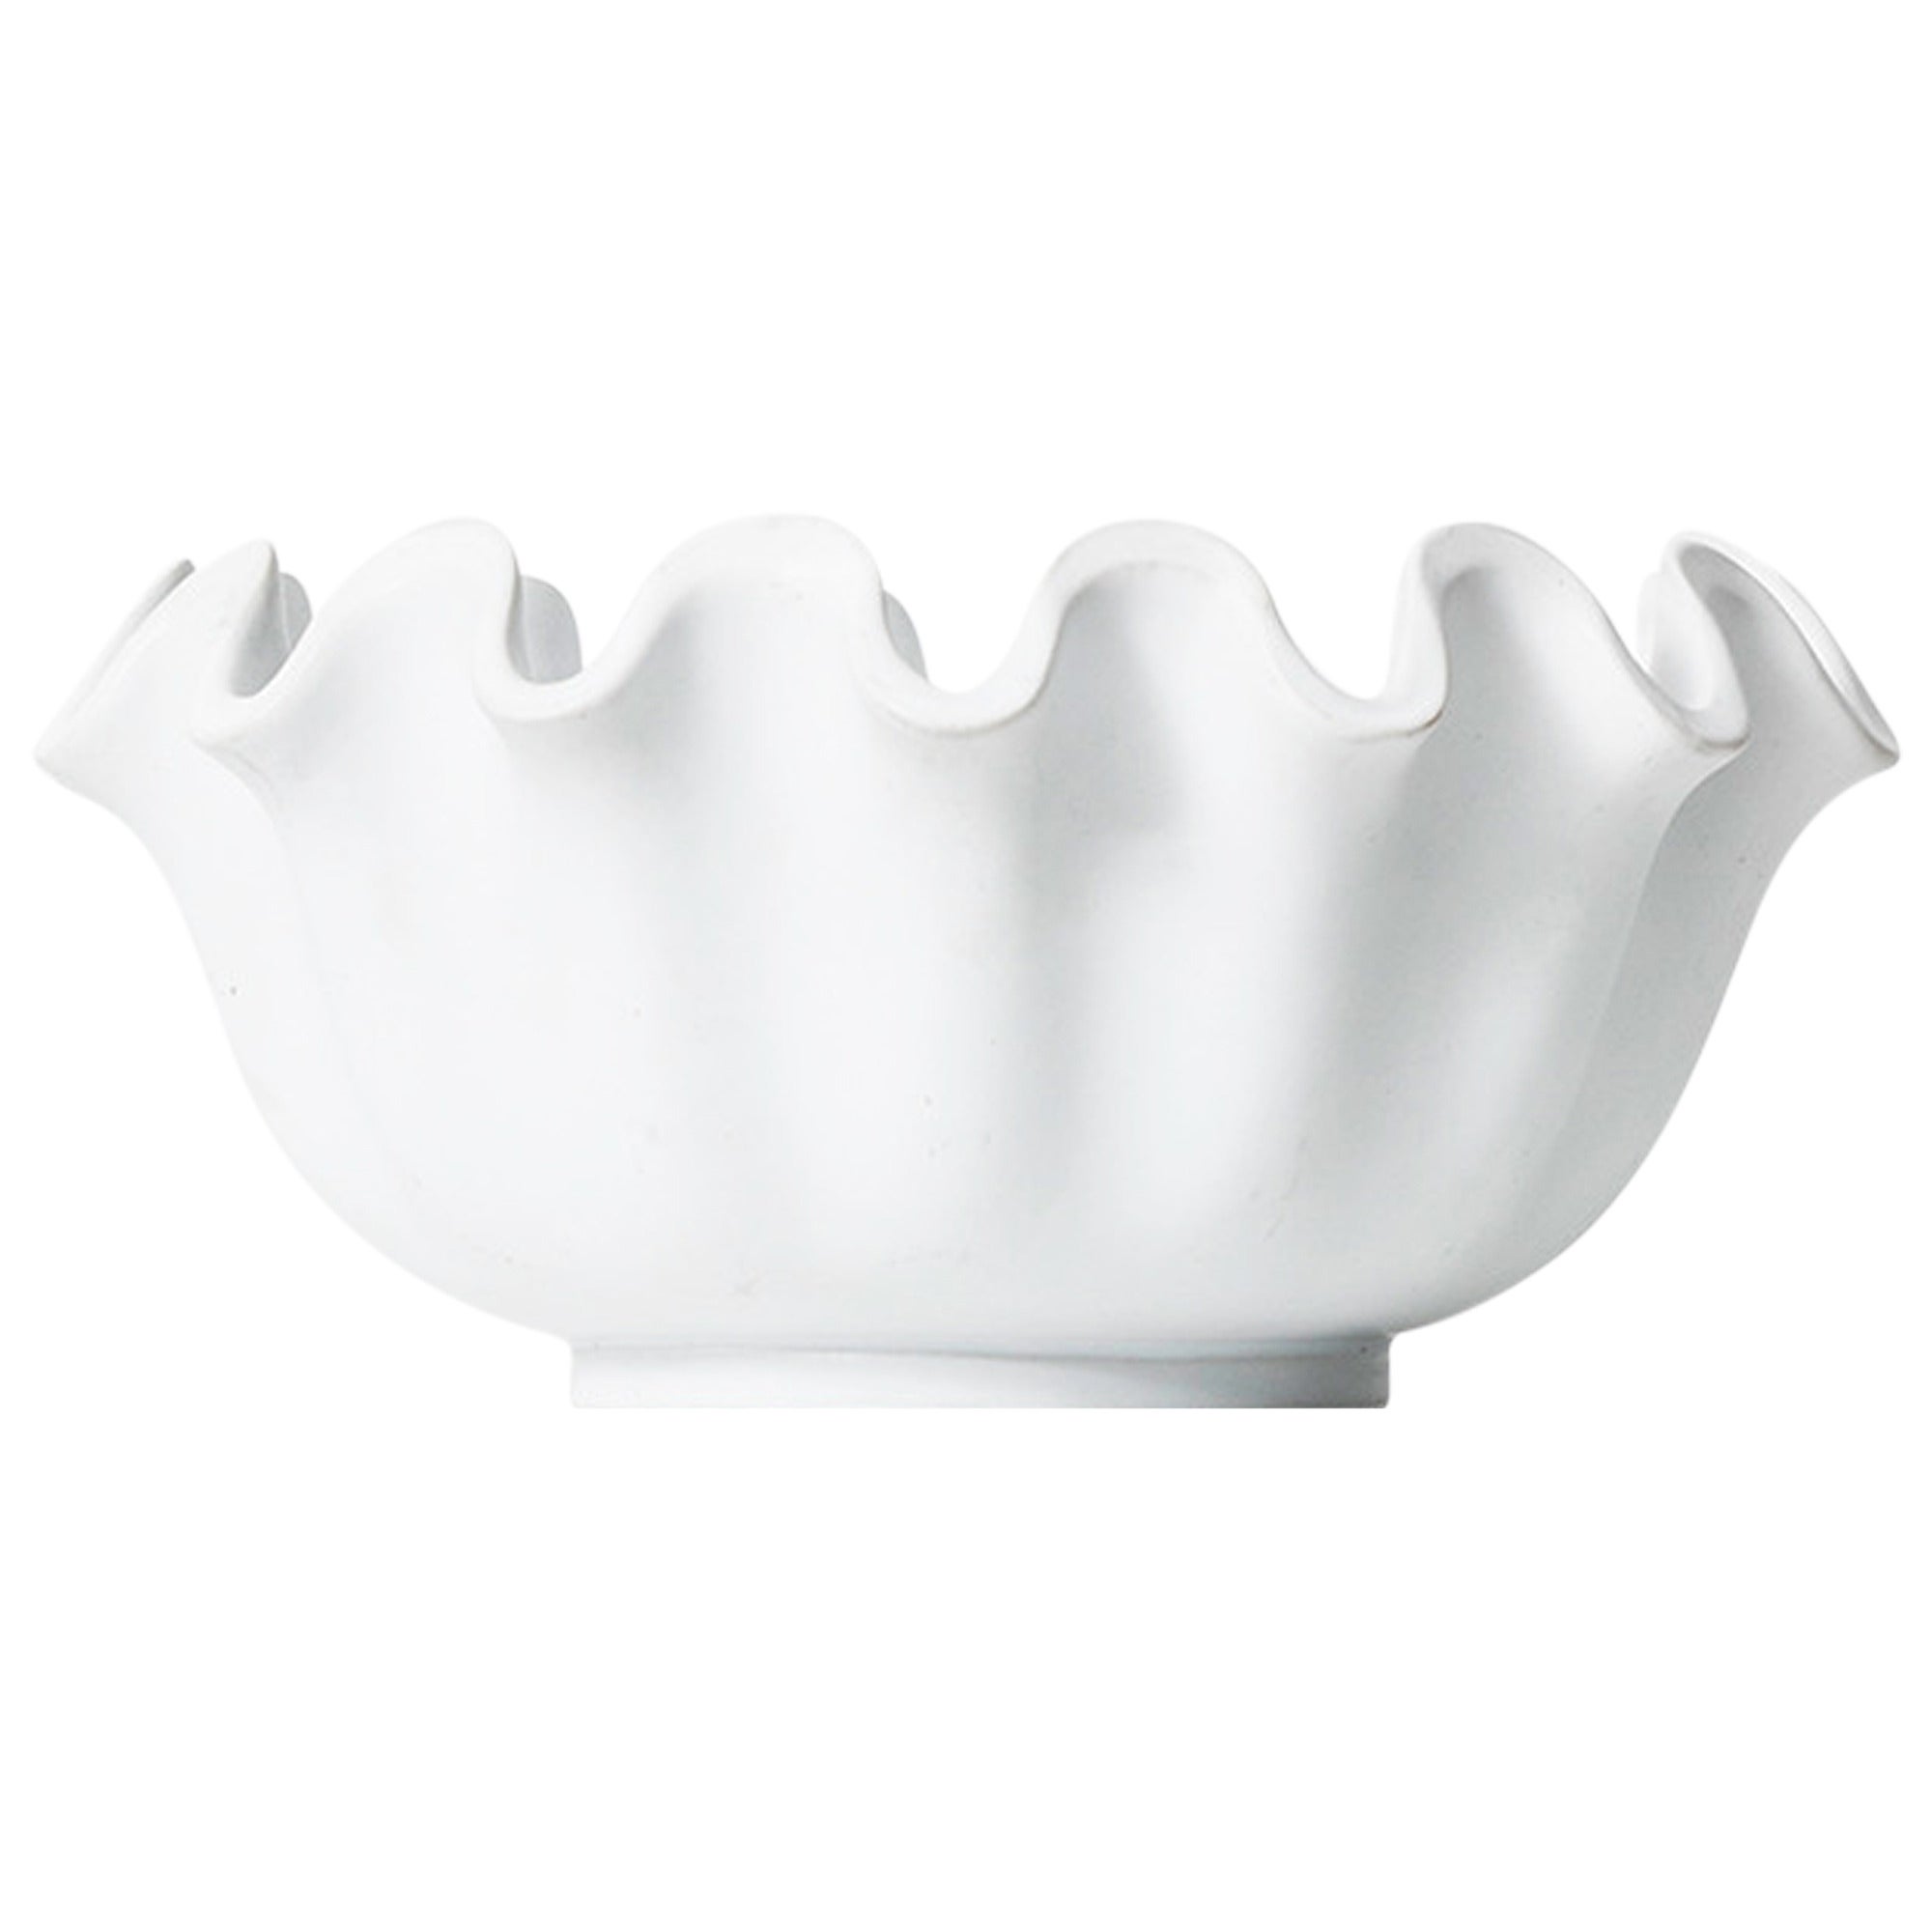 Wilhelm Kåge Ceramic Bowl Model Våga by Gustavsberg in Sweden